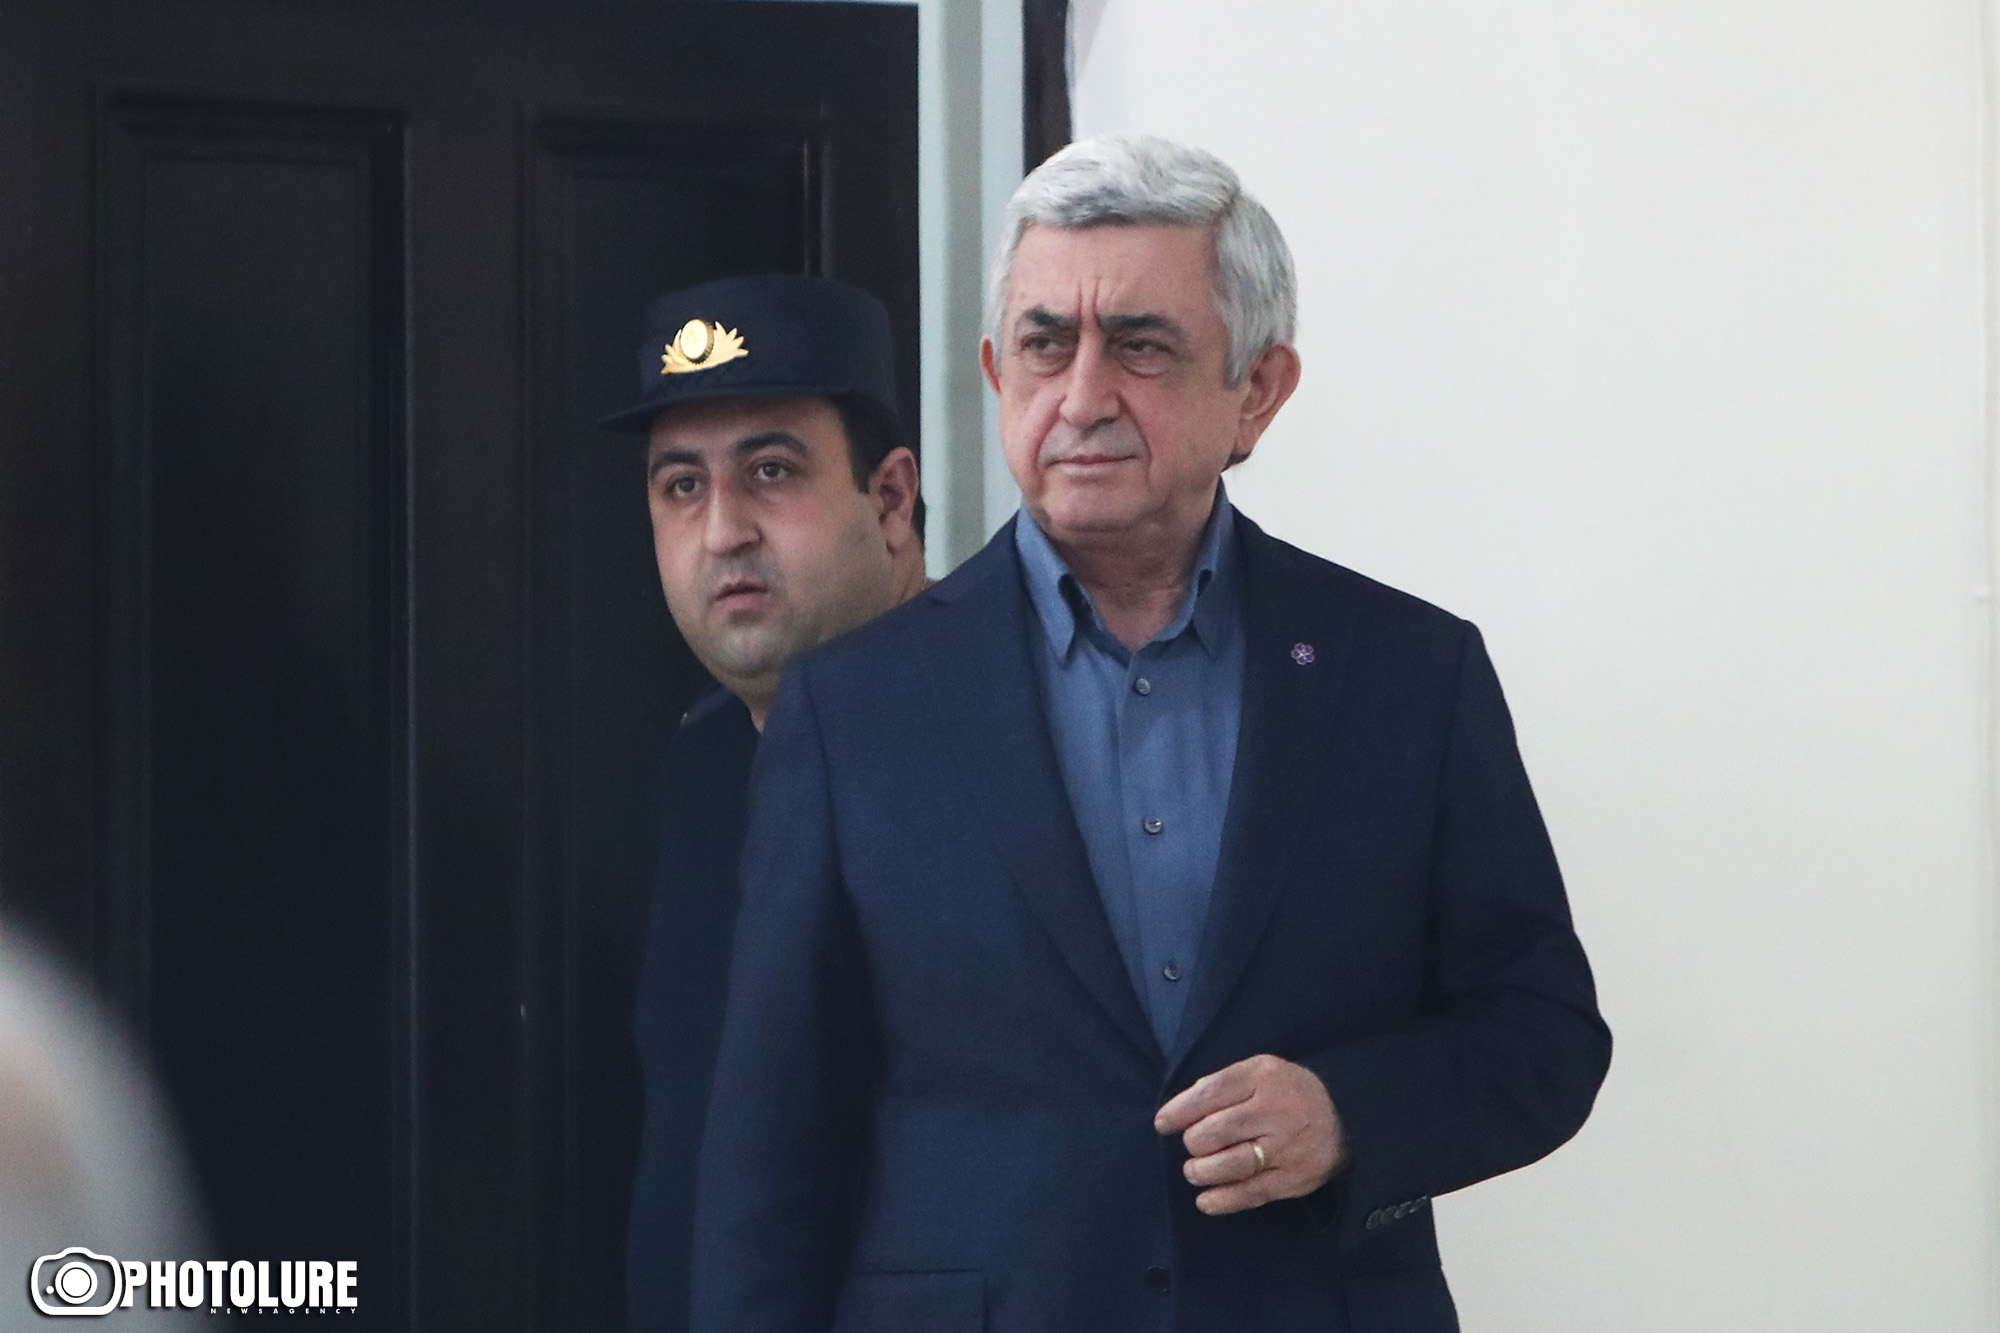 Ընթանում է Սերժ Սարգսյանի եւ մյուսների գործով դատական նիստը (ուղիղ)